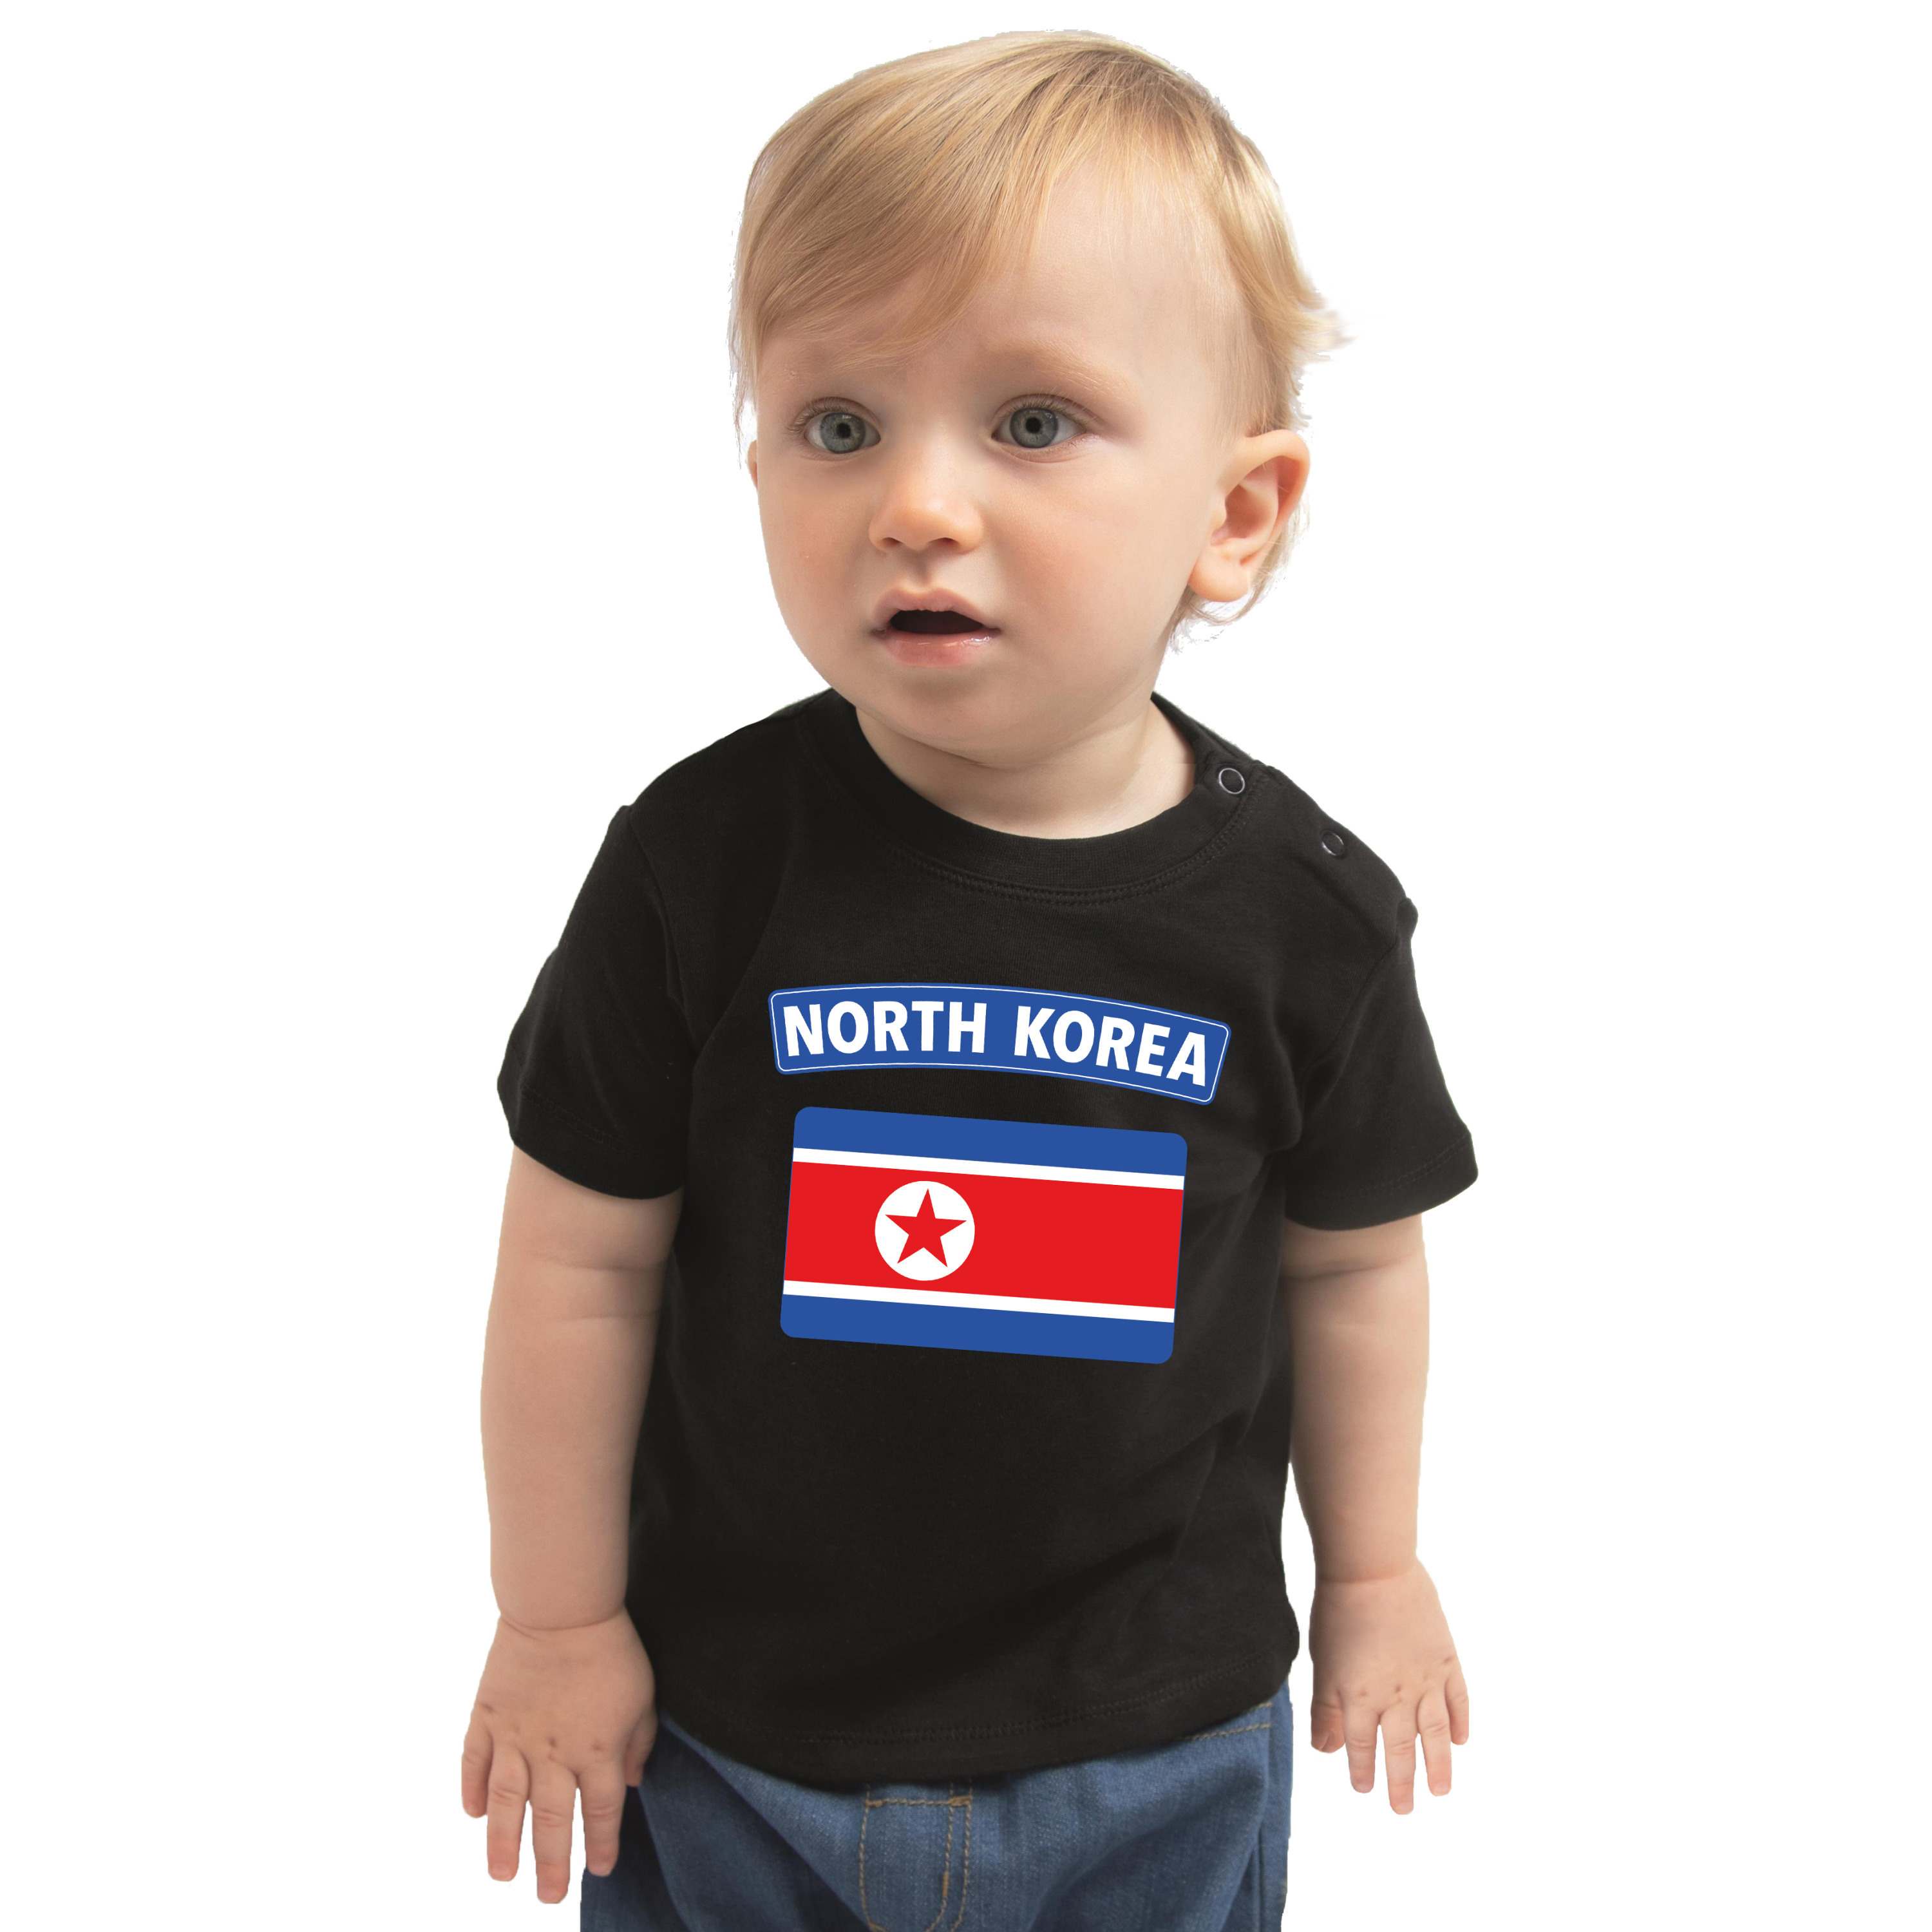 North Korea t shirt met vlag Noord Korea zwart voor babys